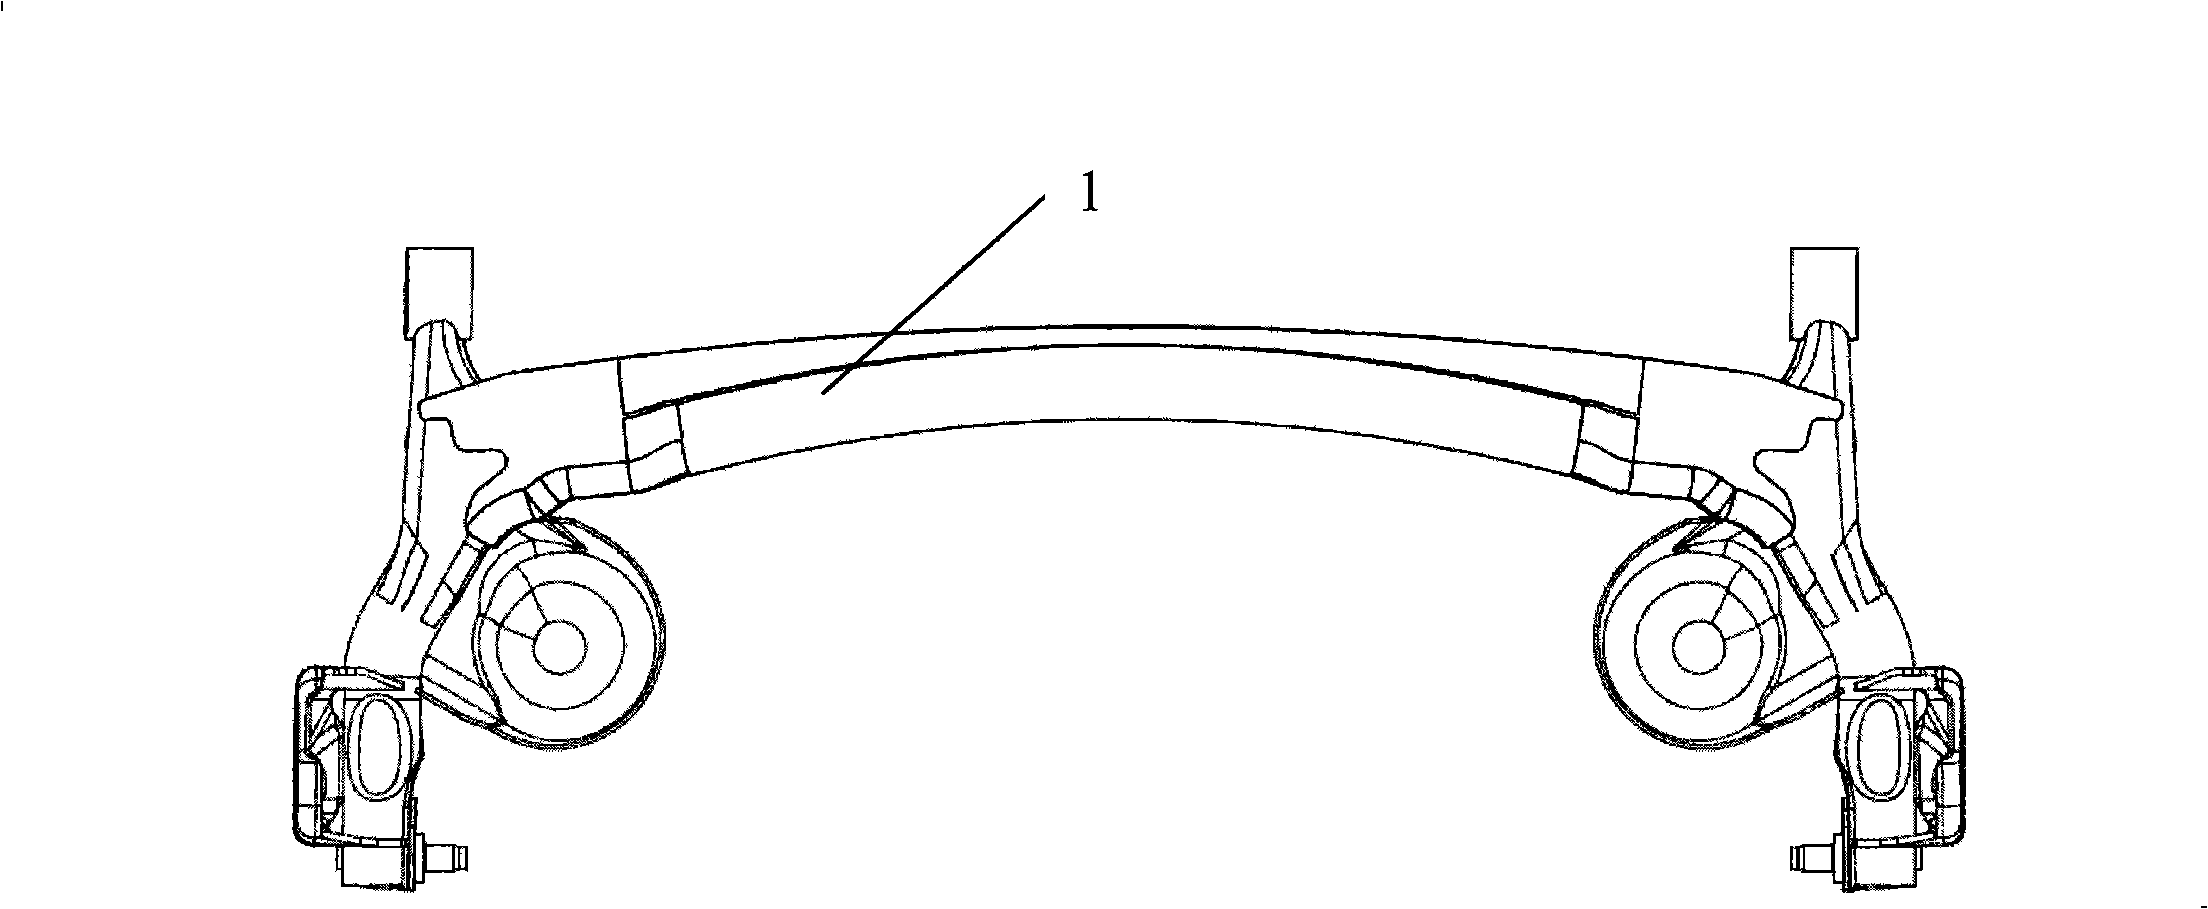 Torsion girder type hind axle